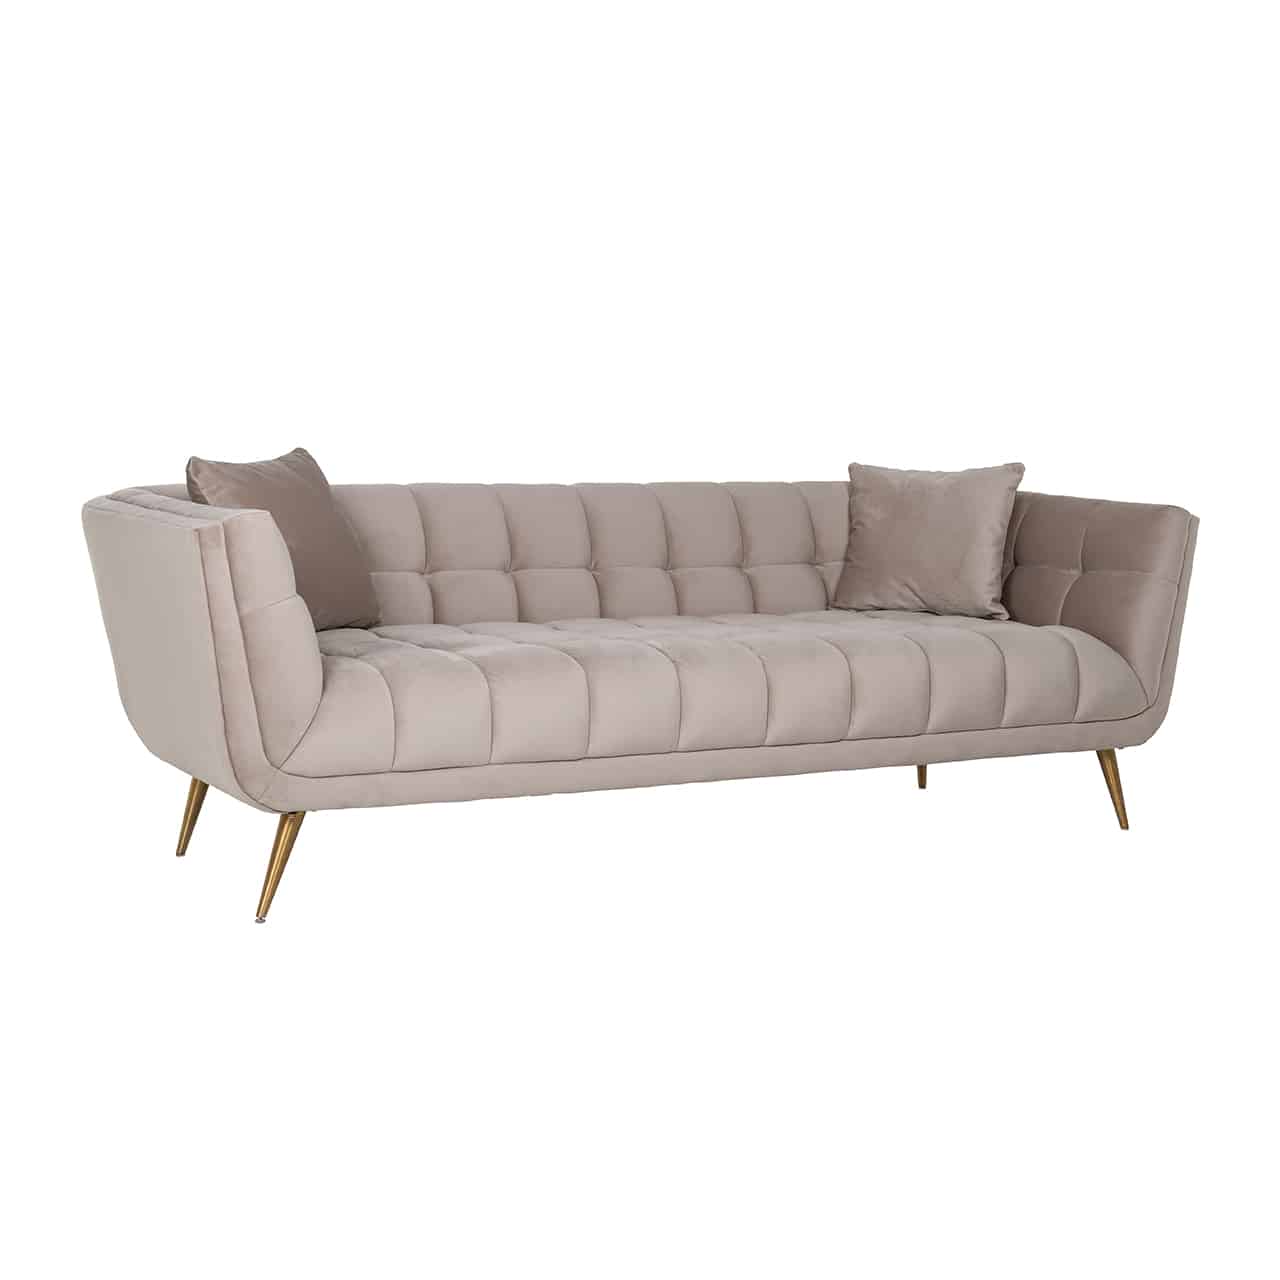 Modernes Sofa in khaki mit umlaufender Lehne, Innenseite mit quadratischer, Steppung; in beiden Ecken je ein quadratisches Kissen; Beine in matt gold, leicht nach außen stehend und nach unten spitz zulaufend.